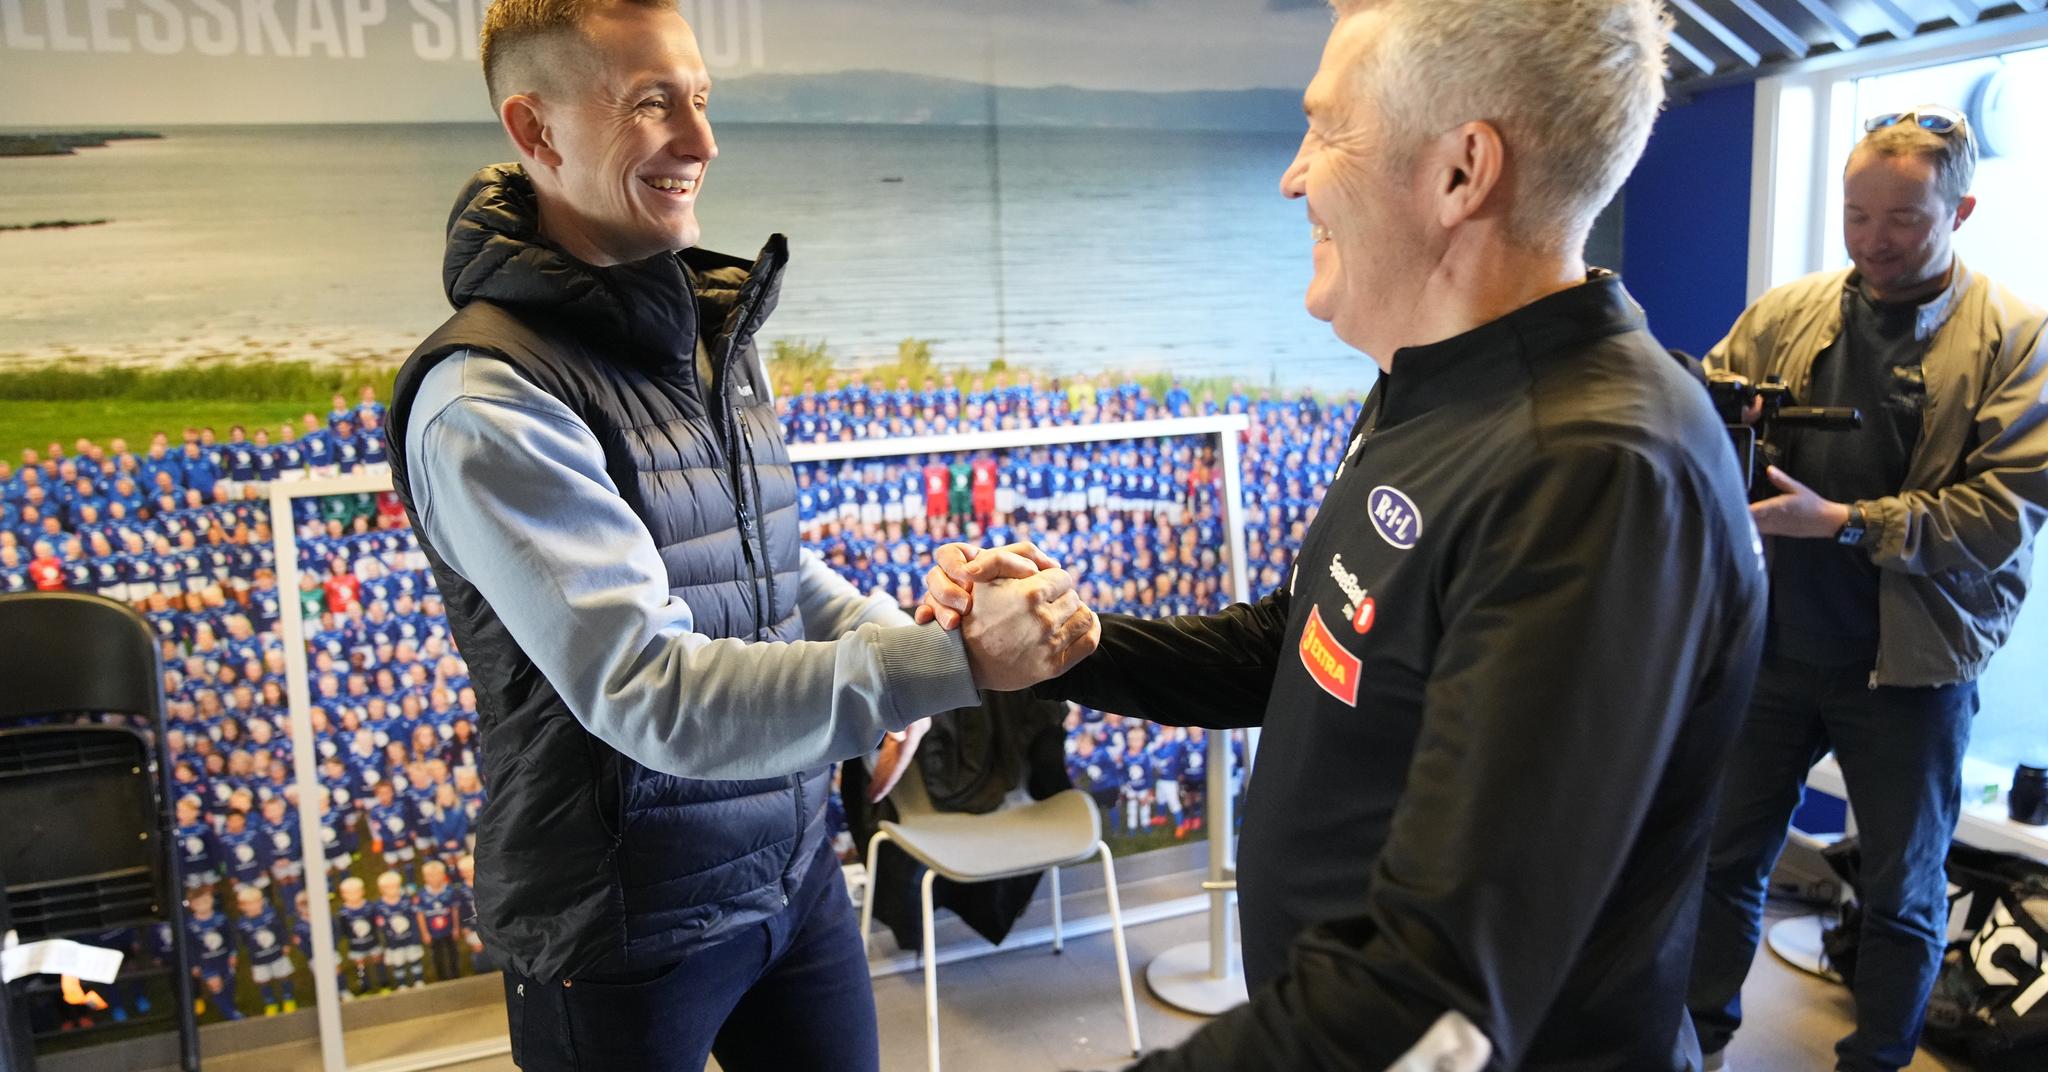 Gjenforent - igjen: Kåre Ingebrigtsen og Morten Gamst Pedersen har vært sammen både i RBK og i Åsane. Nå skjer det igjen.